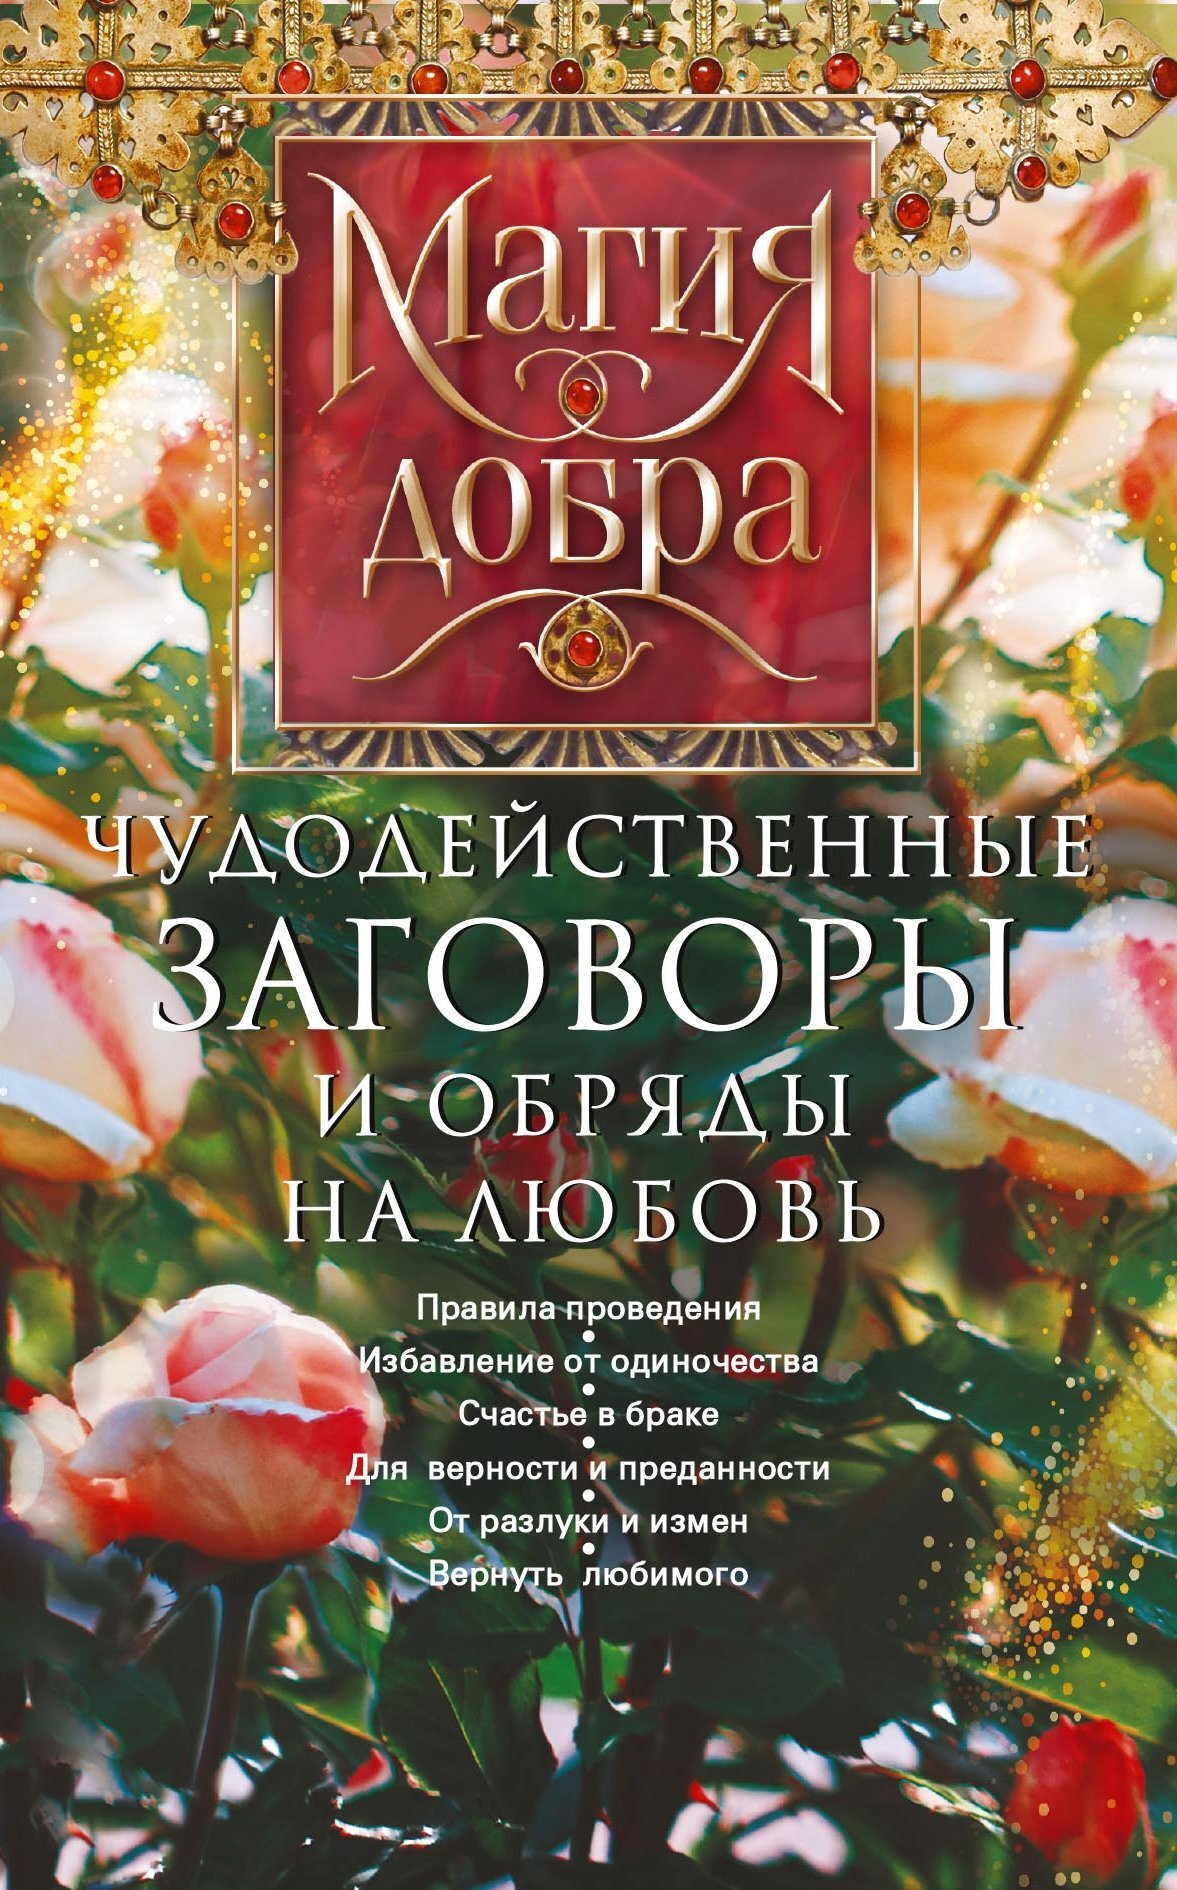 Ритуалы для привлечению любви в жизнь - 3 декабря - natali-fashion.ru